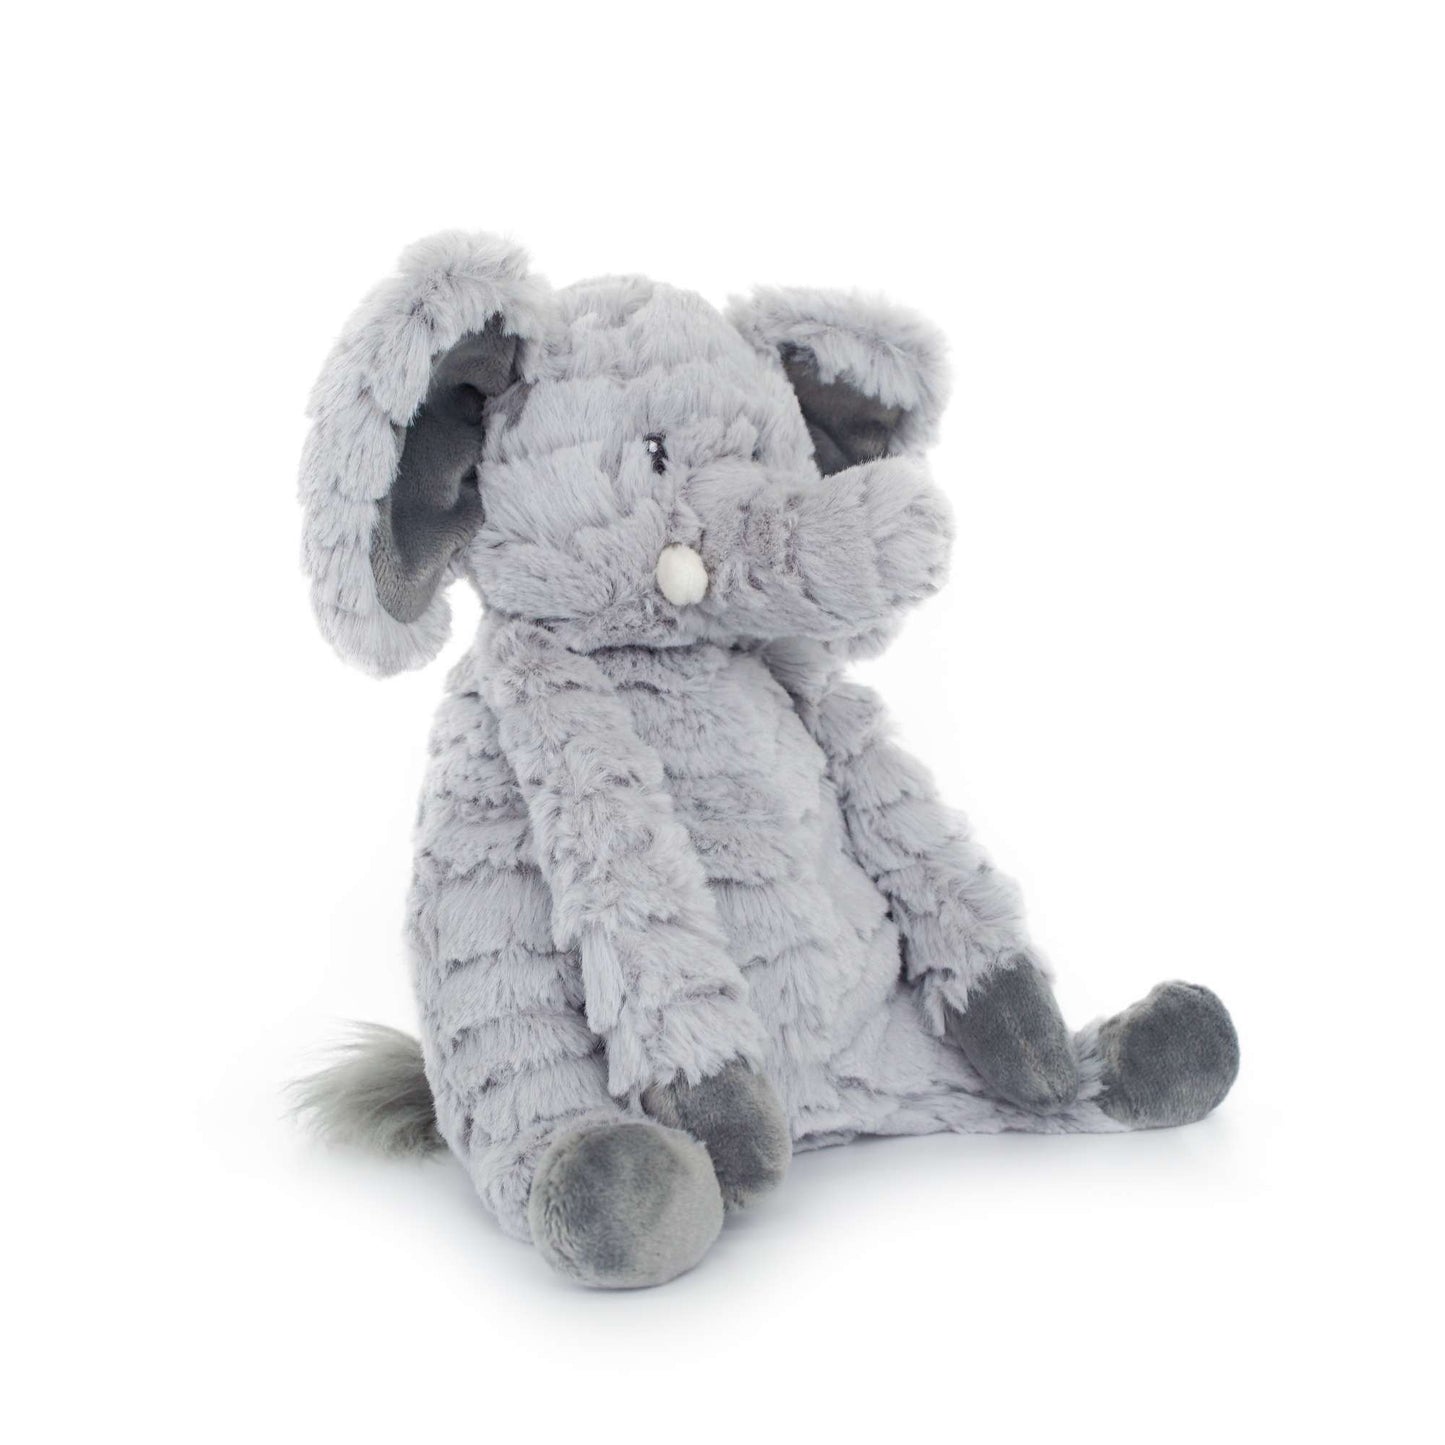 Medium elephant grey stuffed animal PlushThis